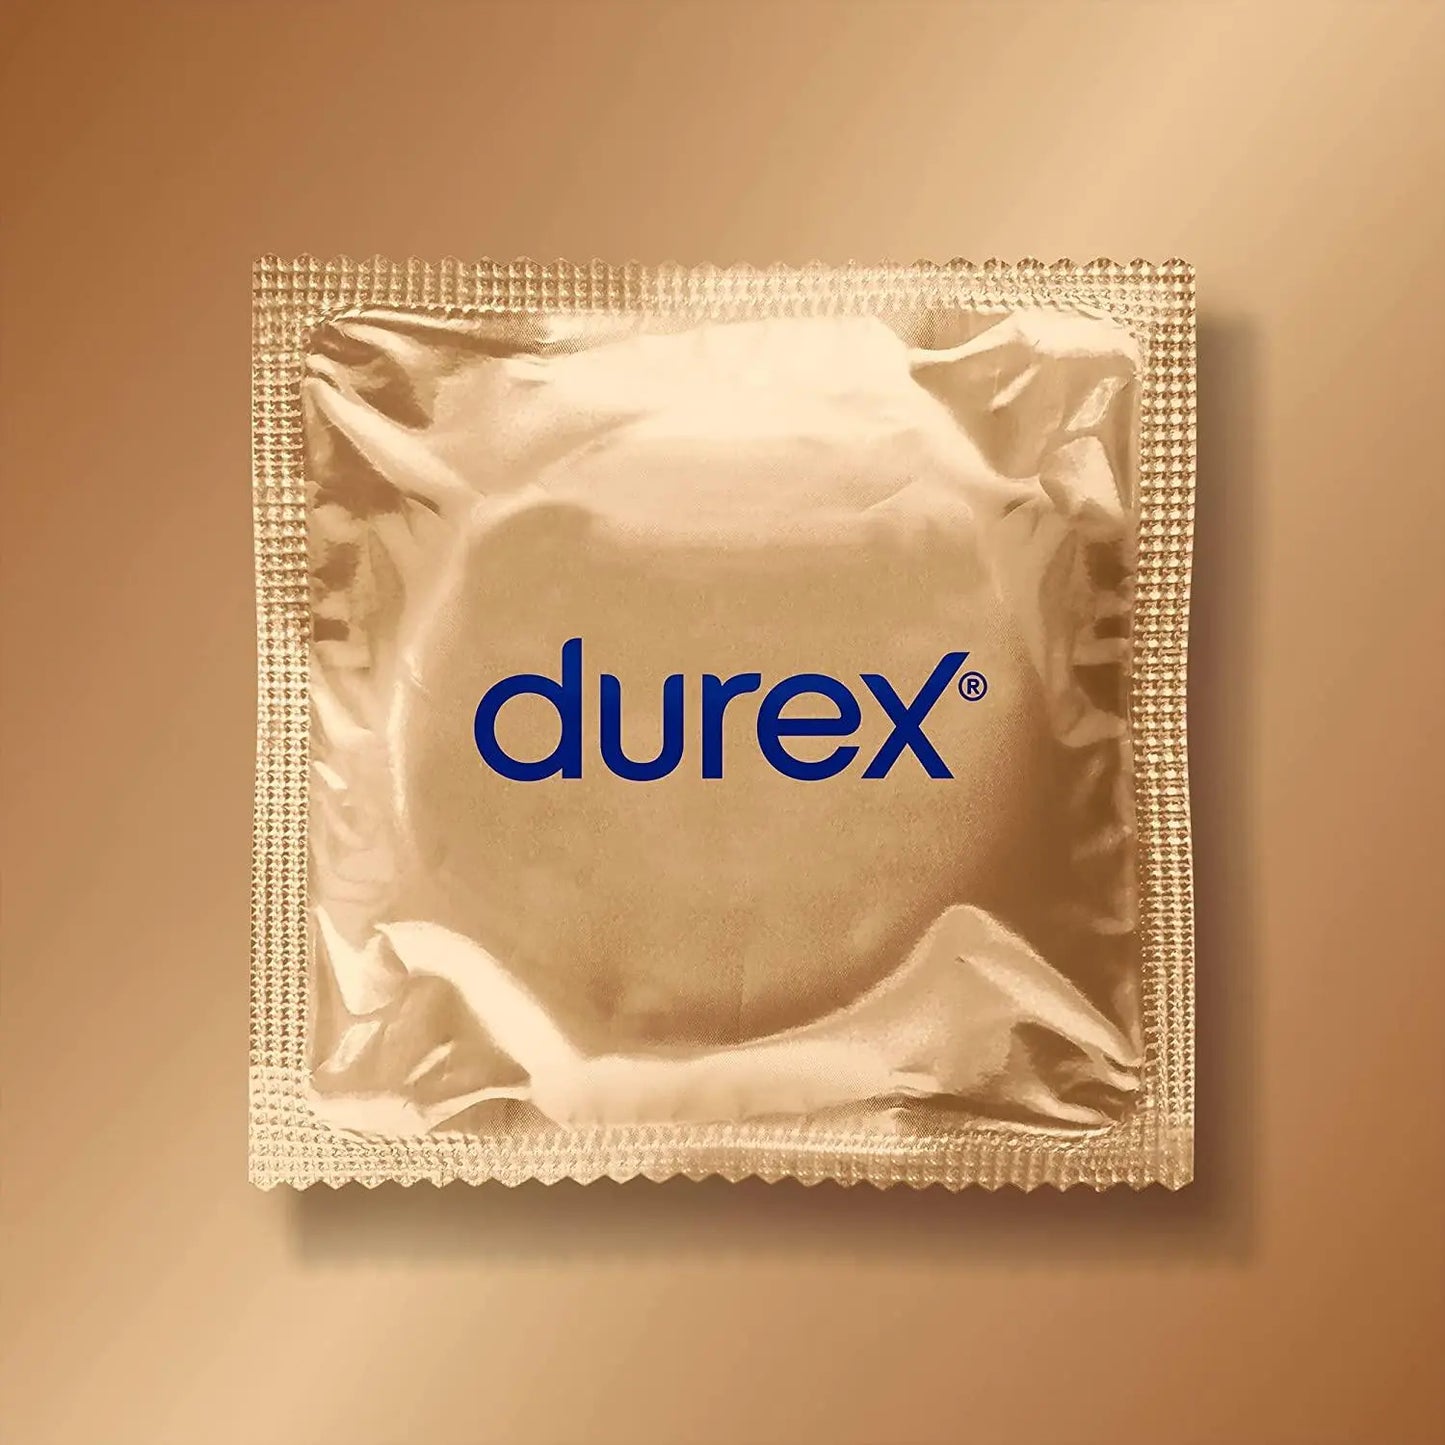 Durex Real Feel Condoms 12s